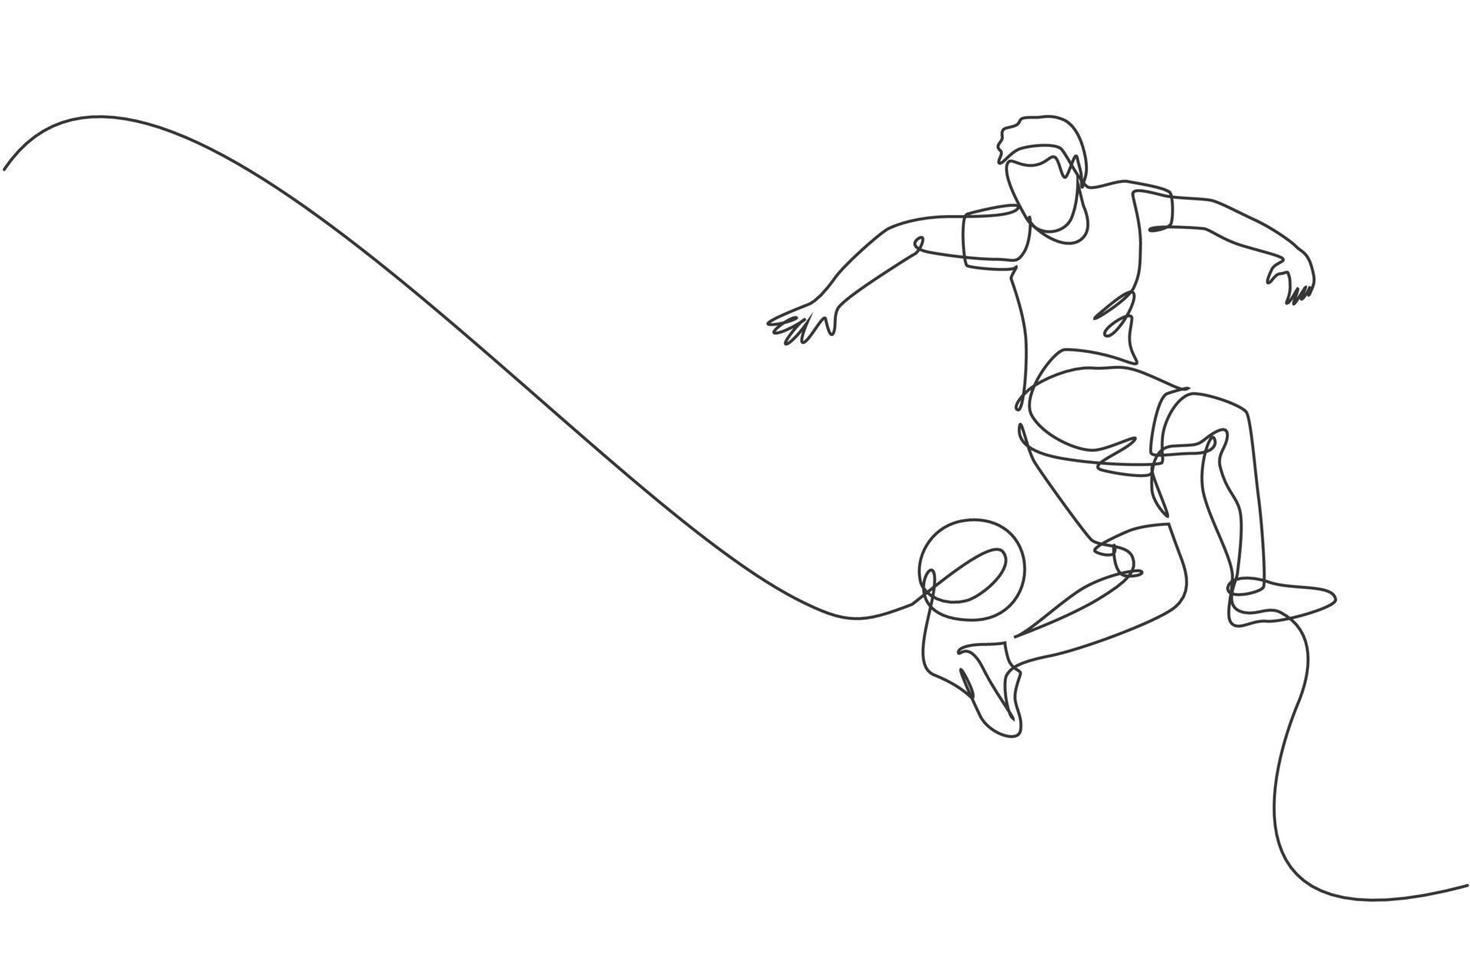 un dessin en ligne continu d'un jeune homme sportif joueur de football freestyler s'entraînant à jongler avec la balle avec le talon dans la rue. concept de sport de style libre de football. illustration vectorielle de dessin à une seule ligne vecteur